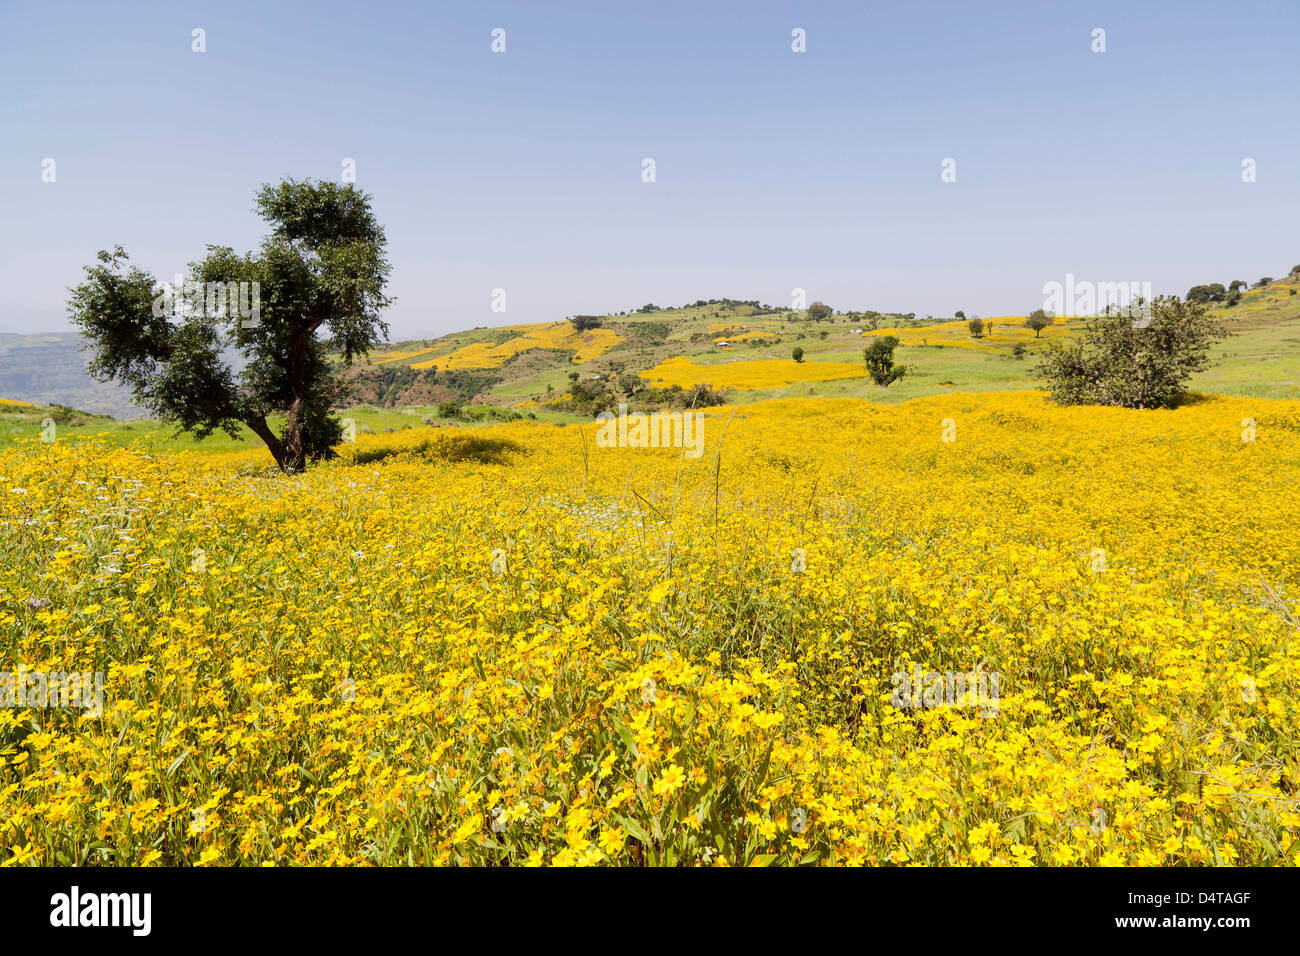 Terrain avec près de graines de Niger, près de Mulit Montagnes Semien, Ethiopie Banque D'Images